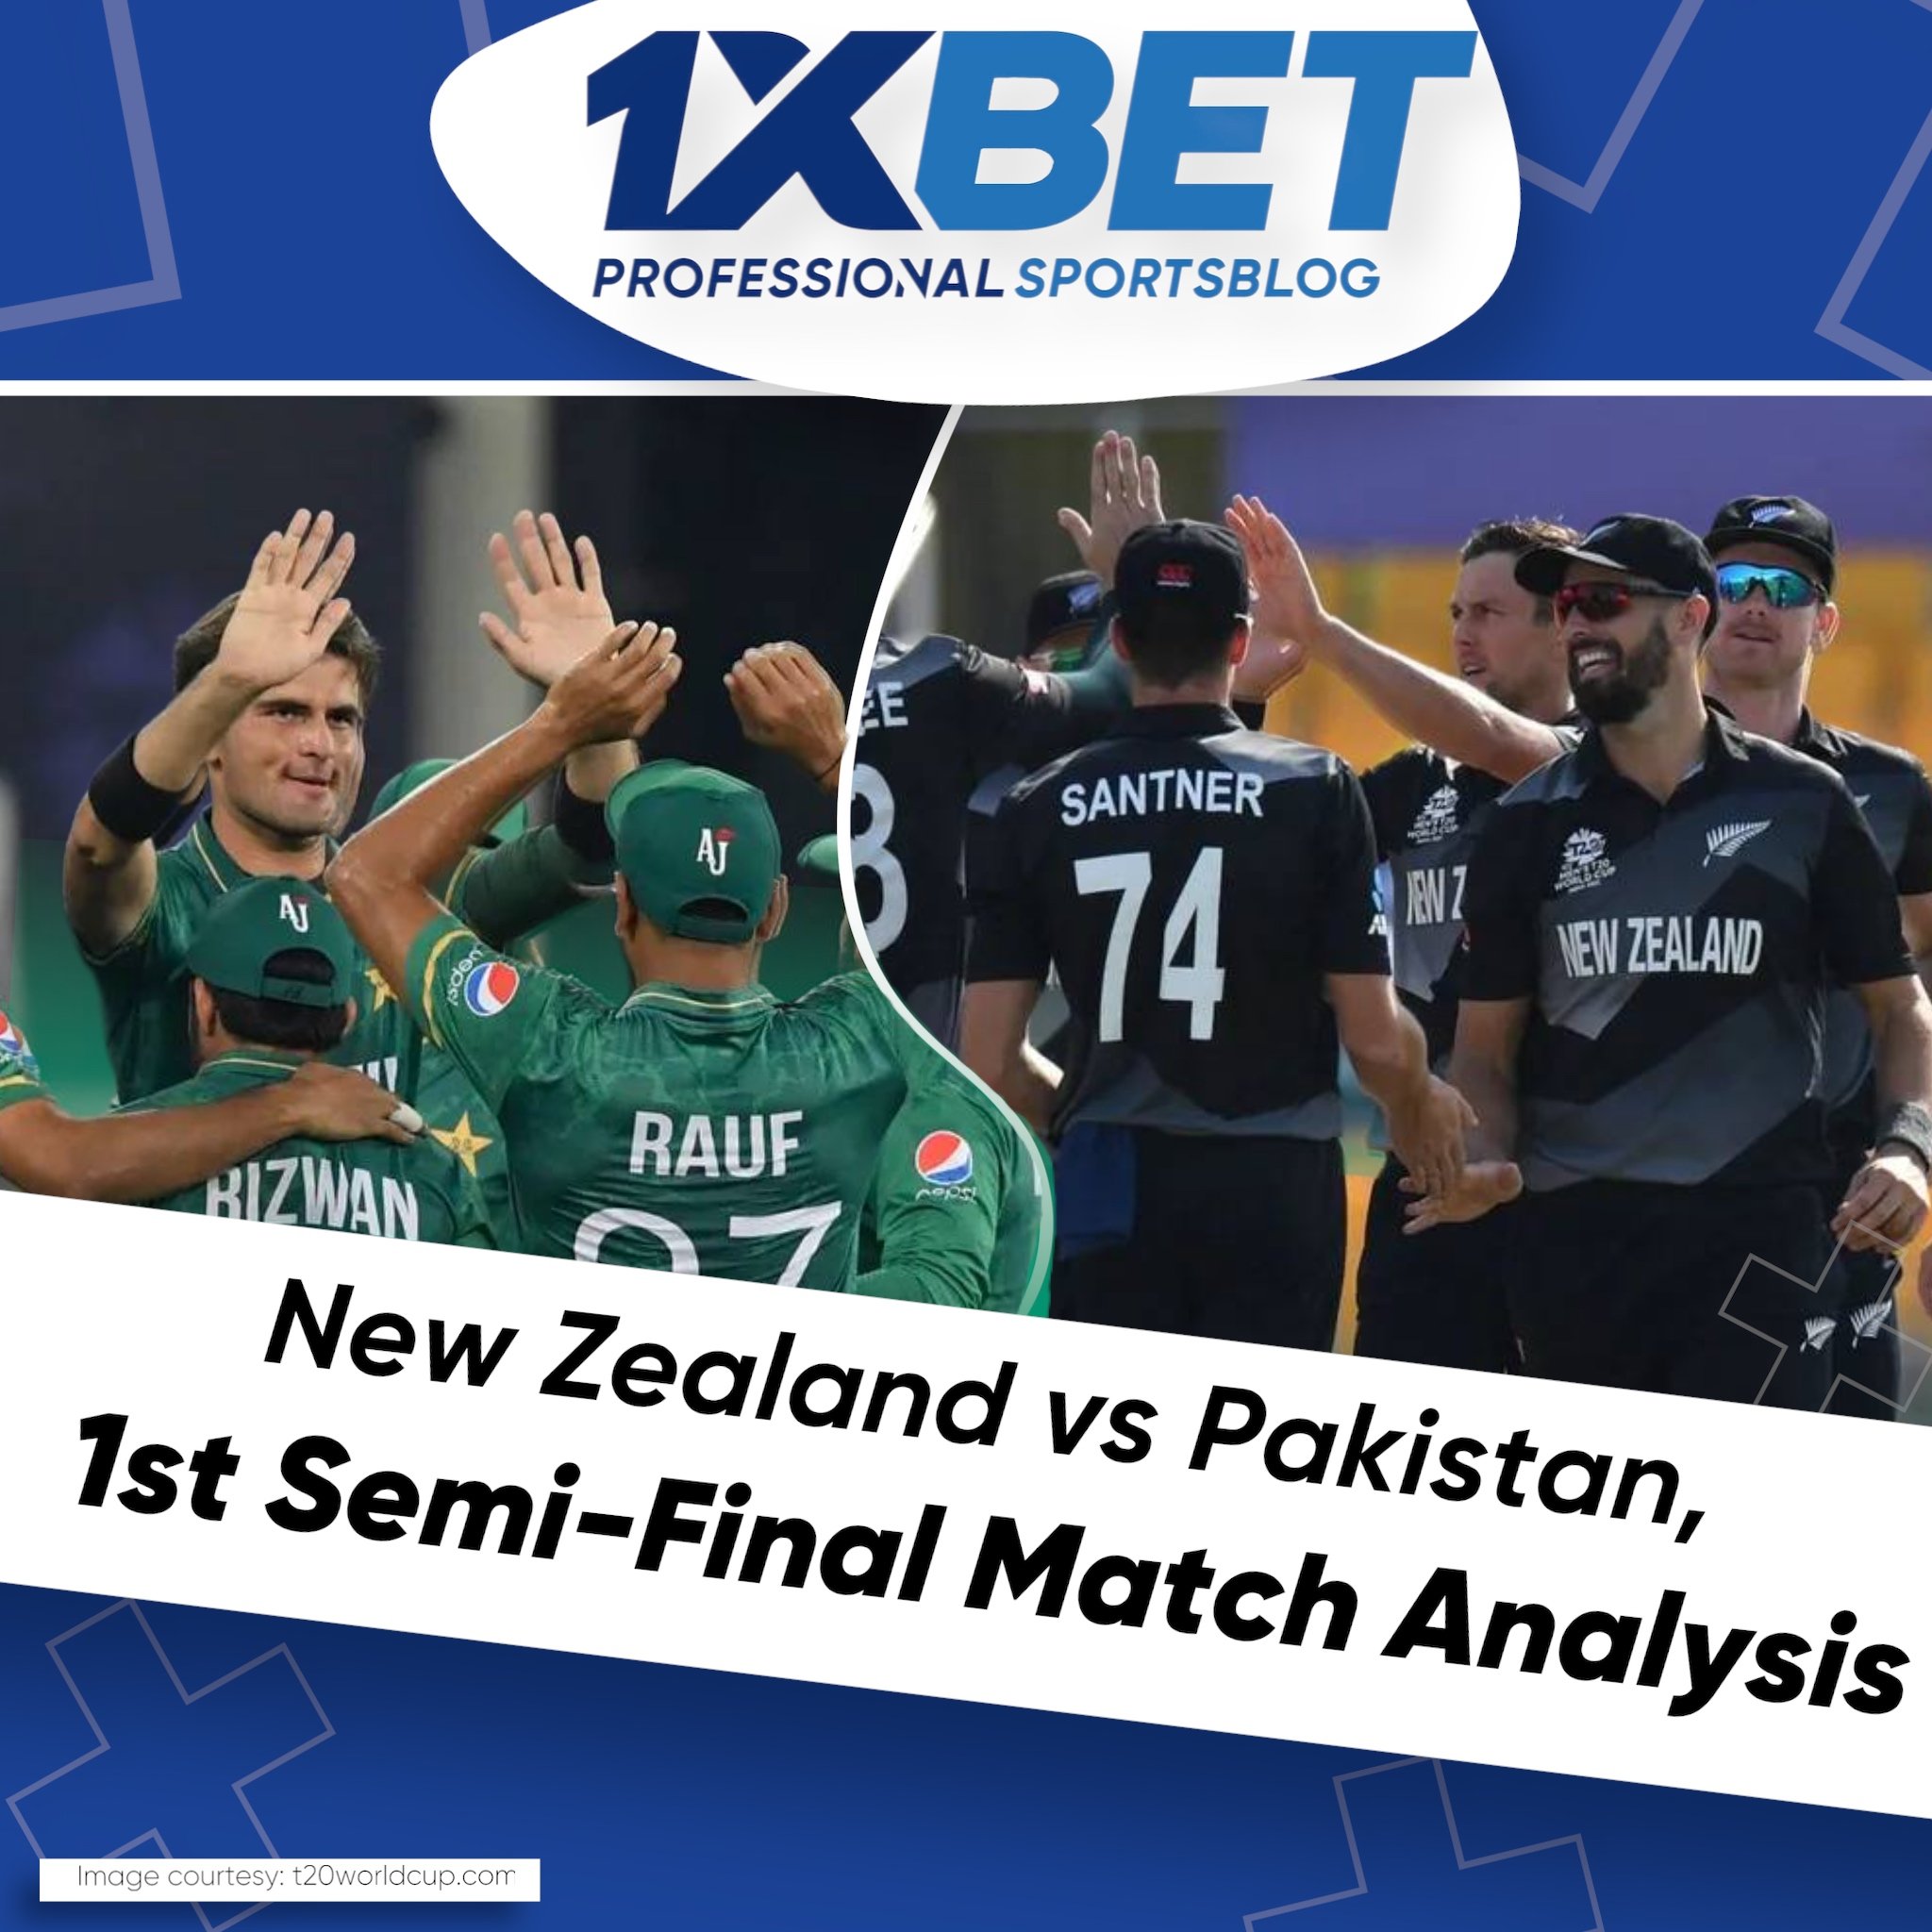 New Zealand vs Pakistan, 1st Semi-Final Match Analysis